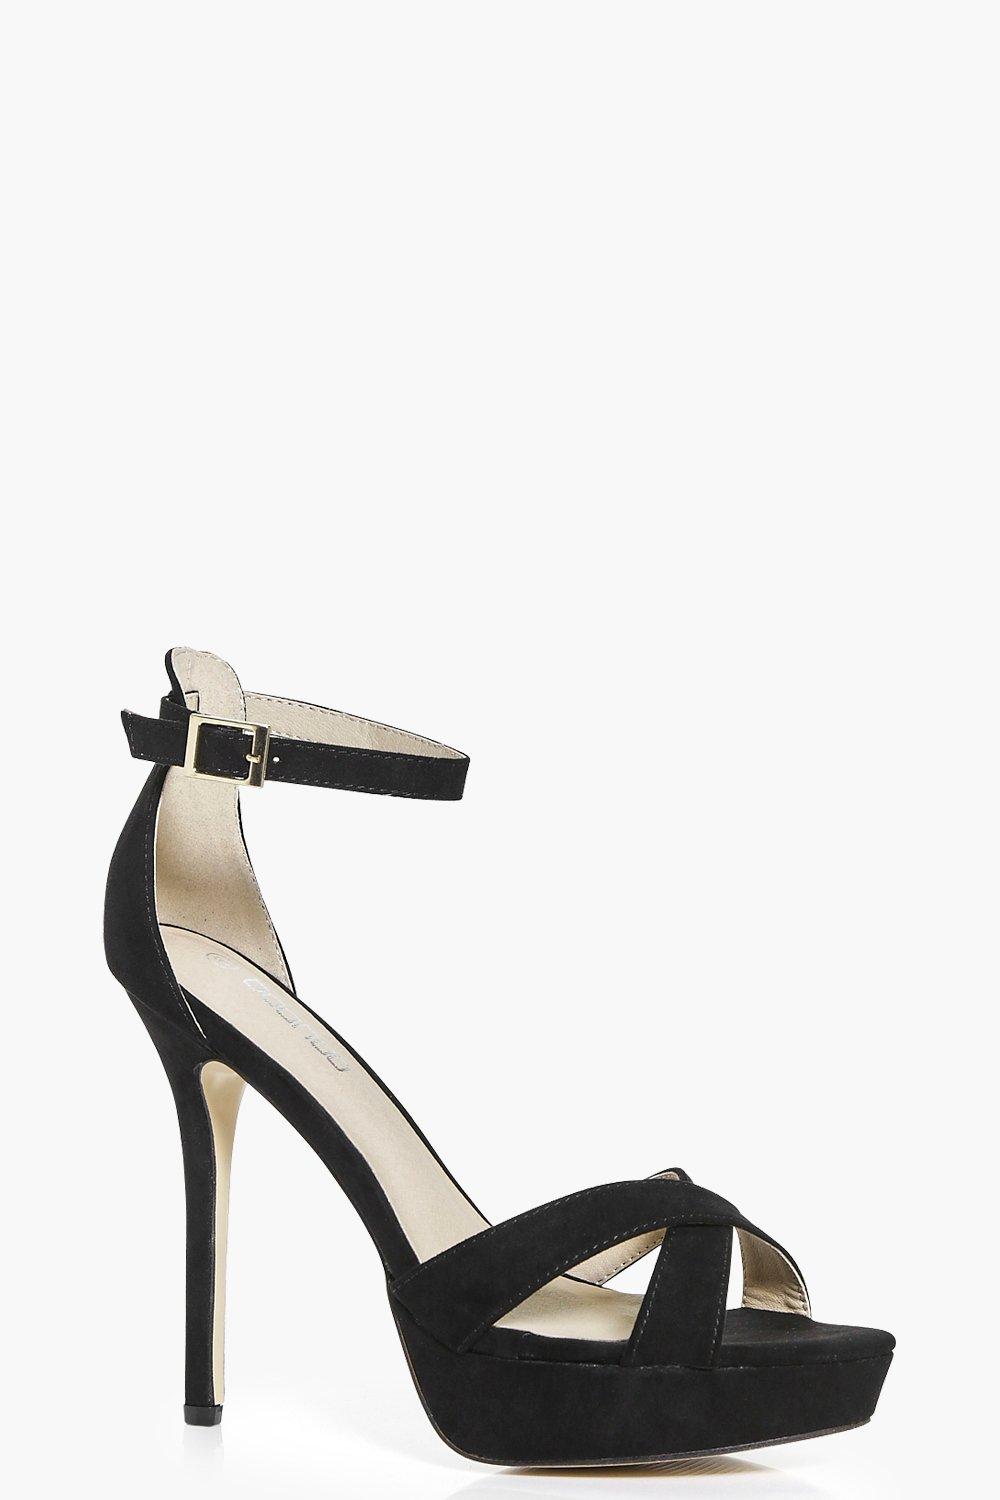 heels with platform front